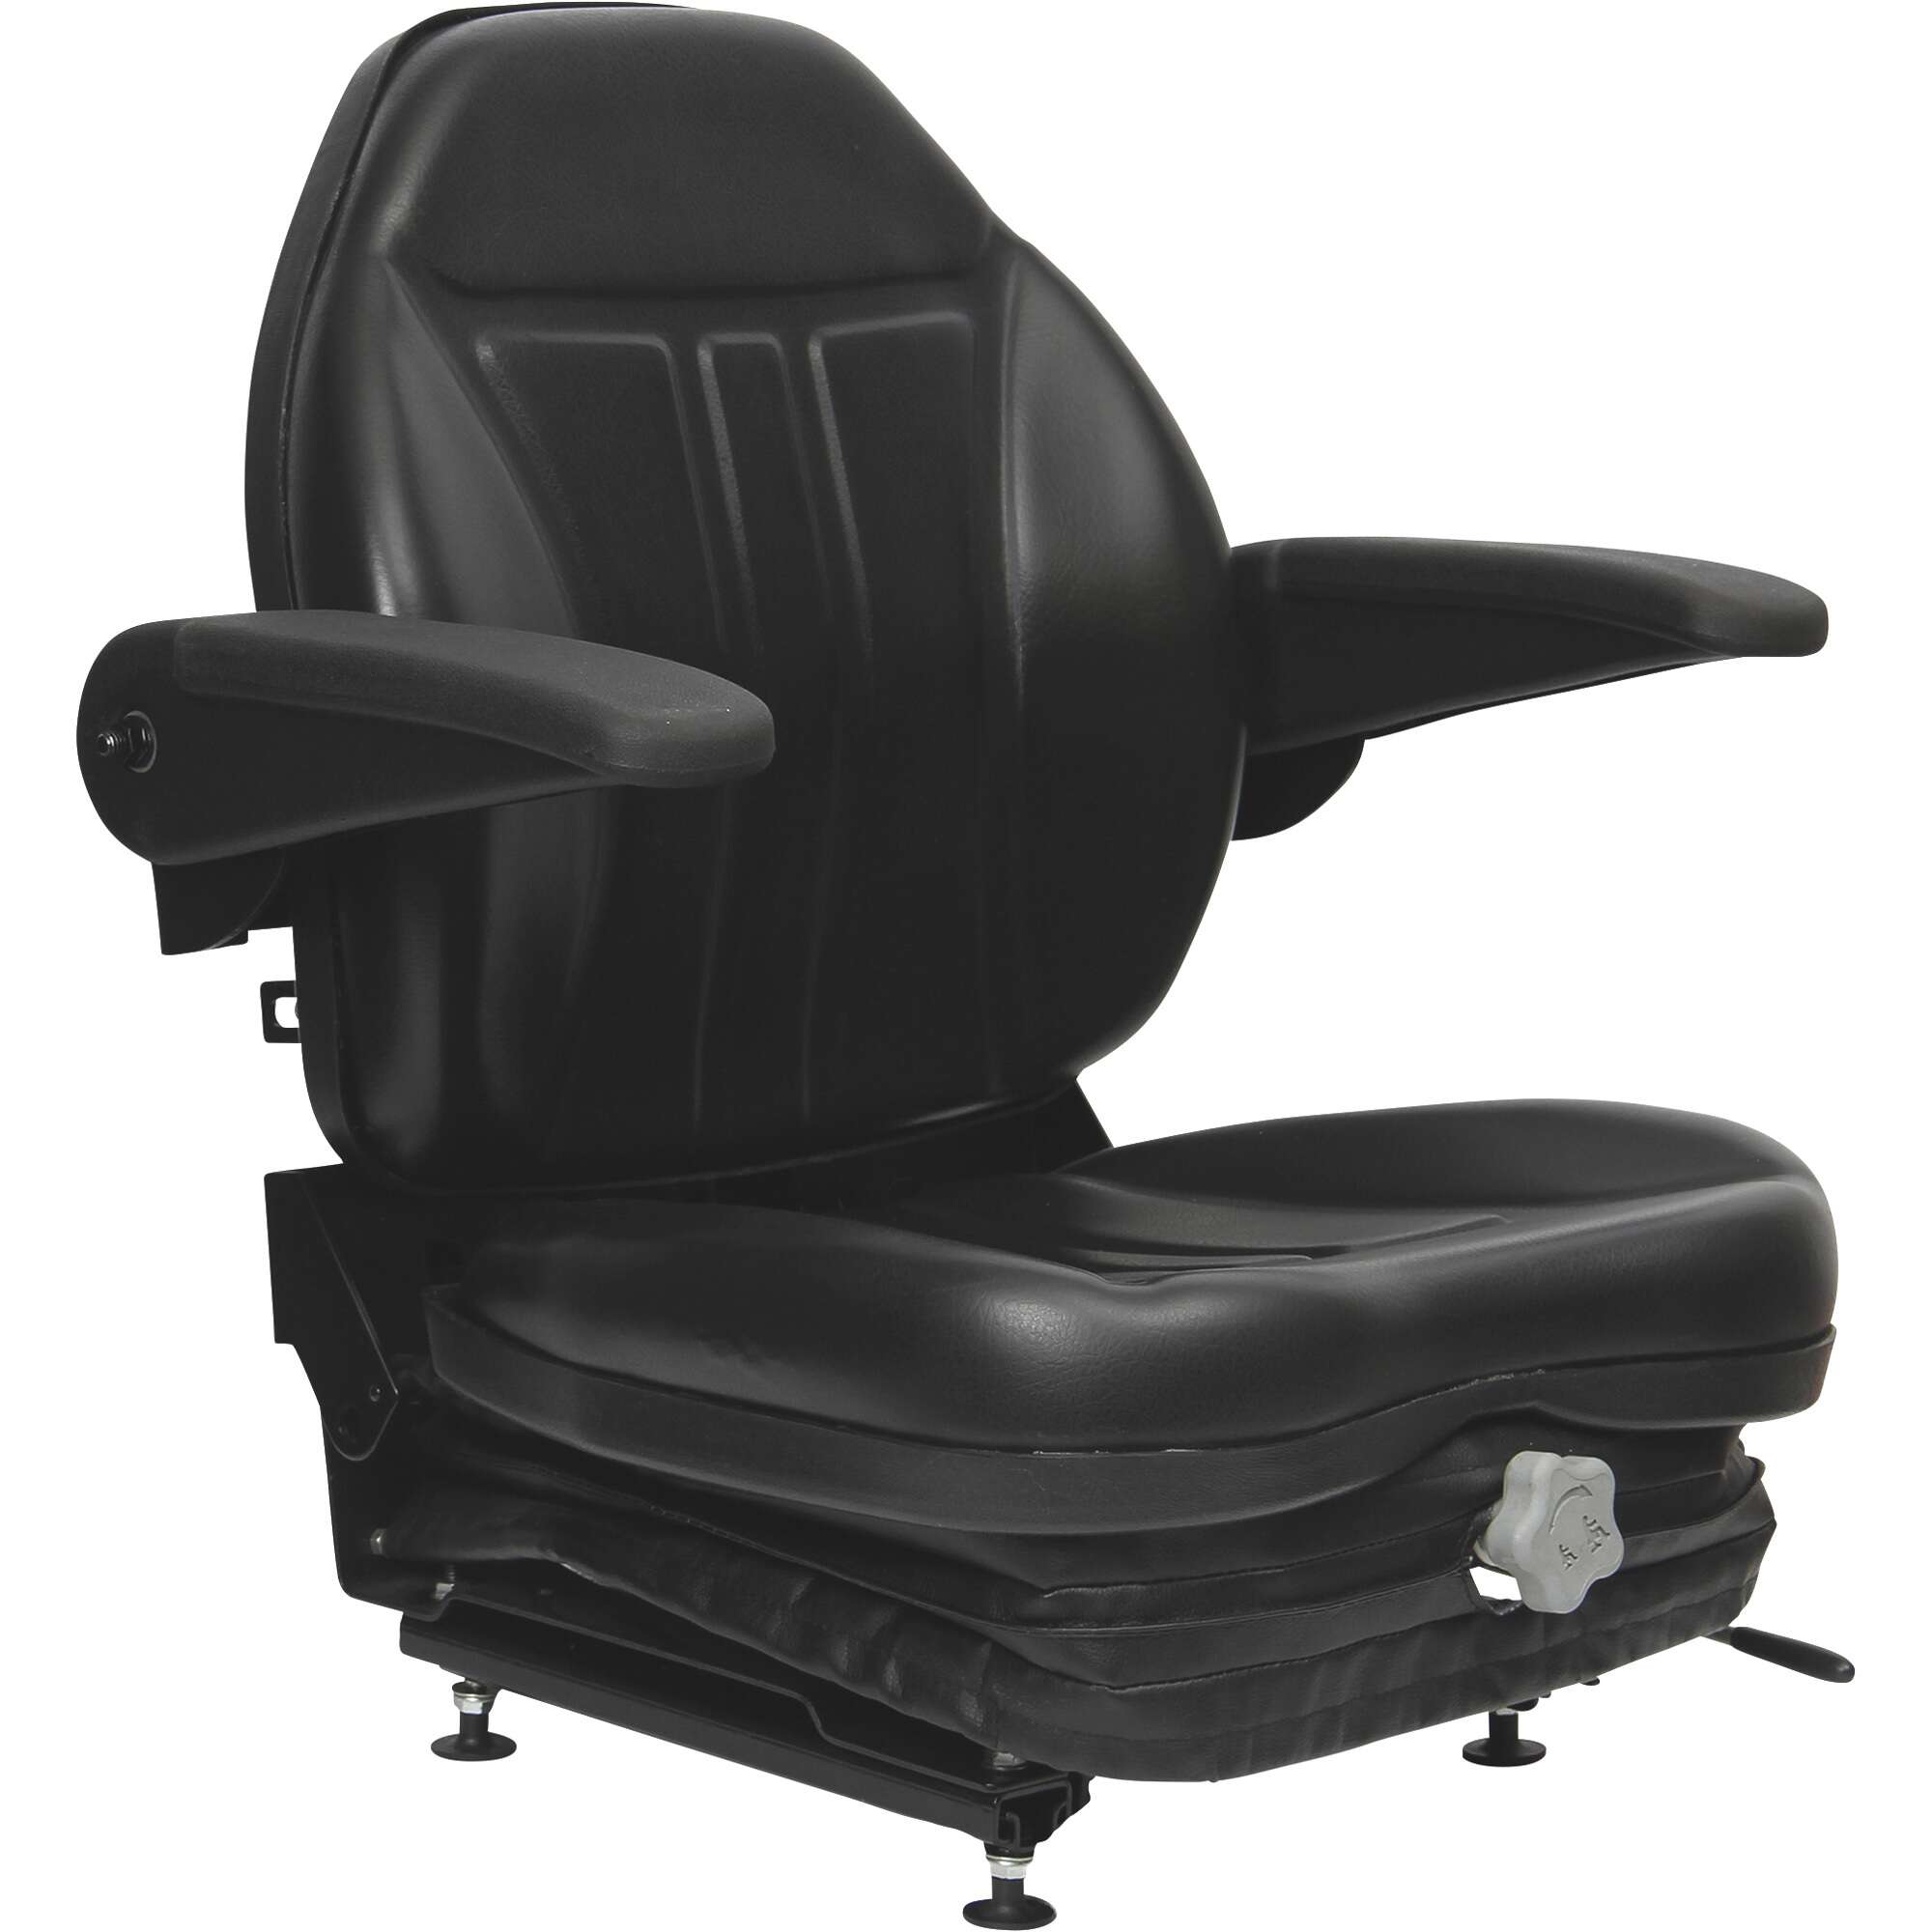 Black Talon High Back Suspension Seat with Folding Armrests Black